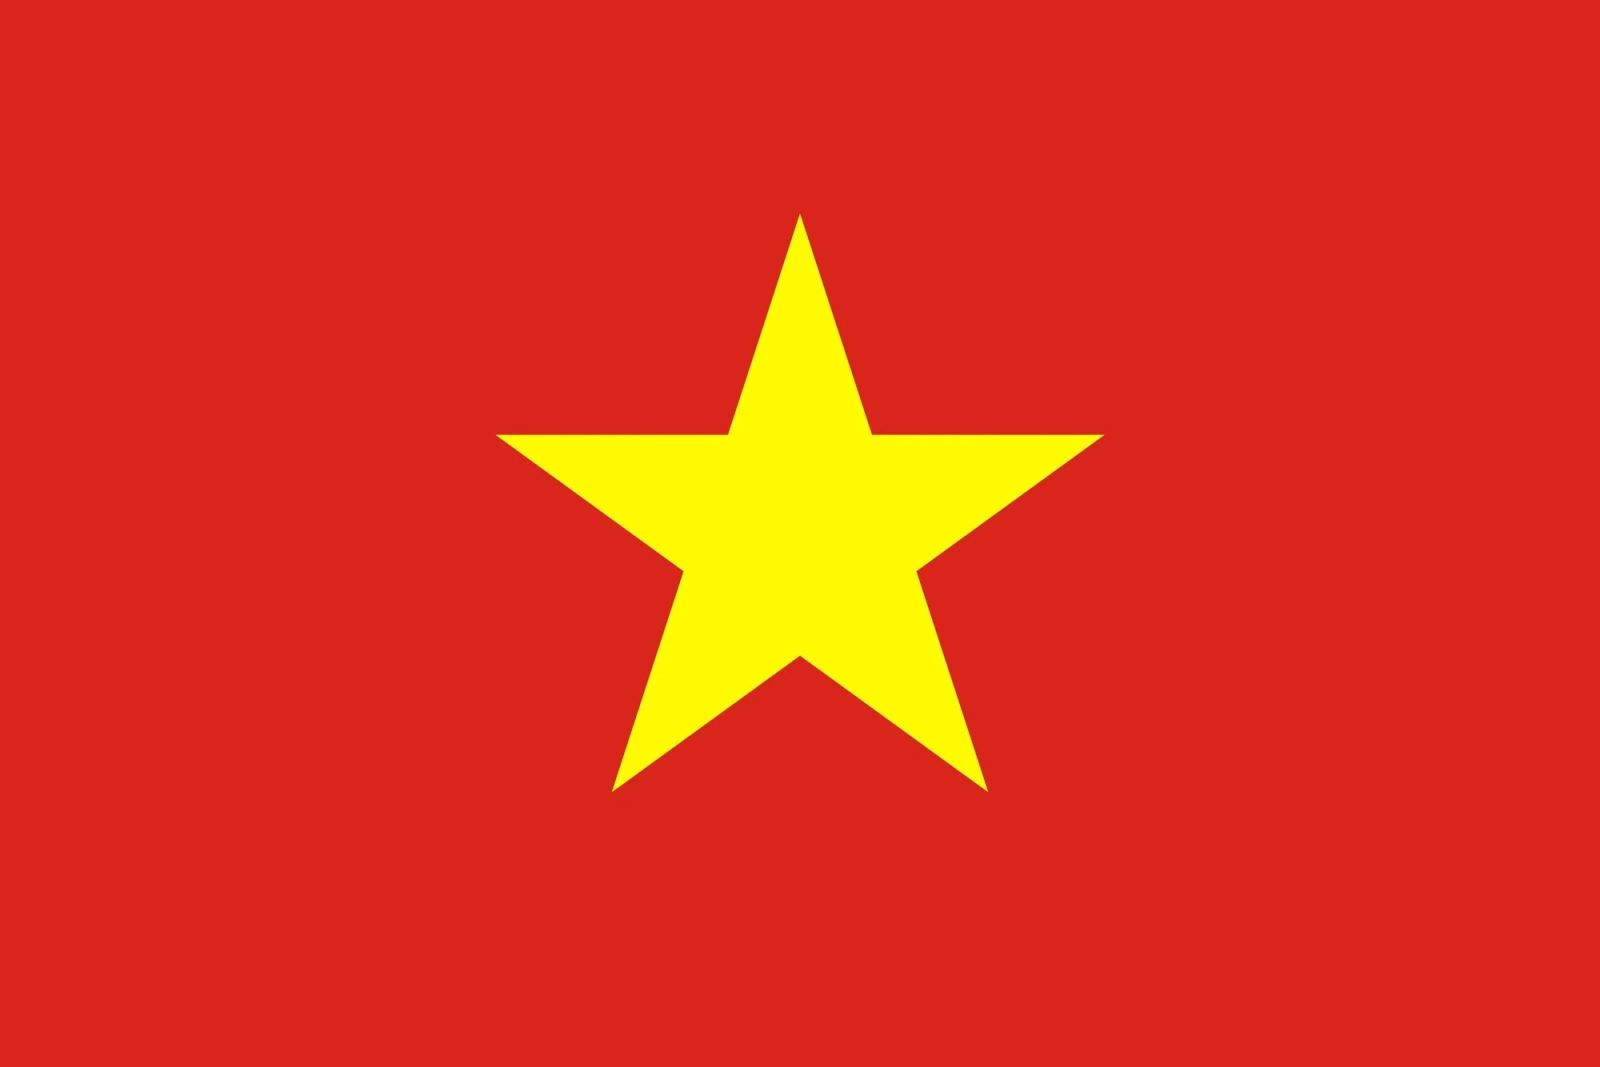 Thông báo về việc treo cờ Tổ quốc nhân dịp kỷ niệm 70 năm Chiến thắng Điện Biên Phủ (7/5/1954 - 7/5/2024)